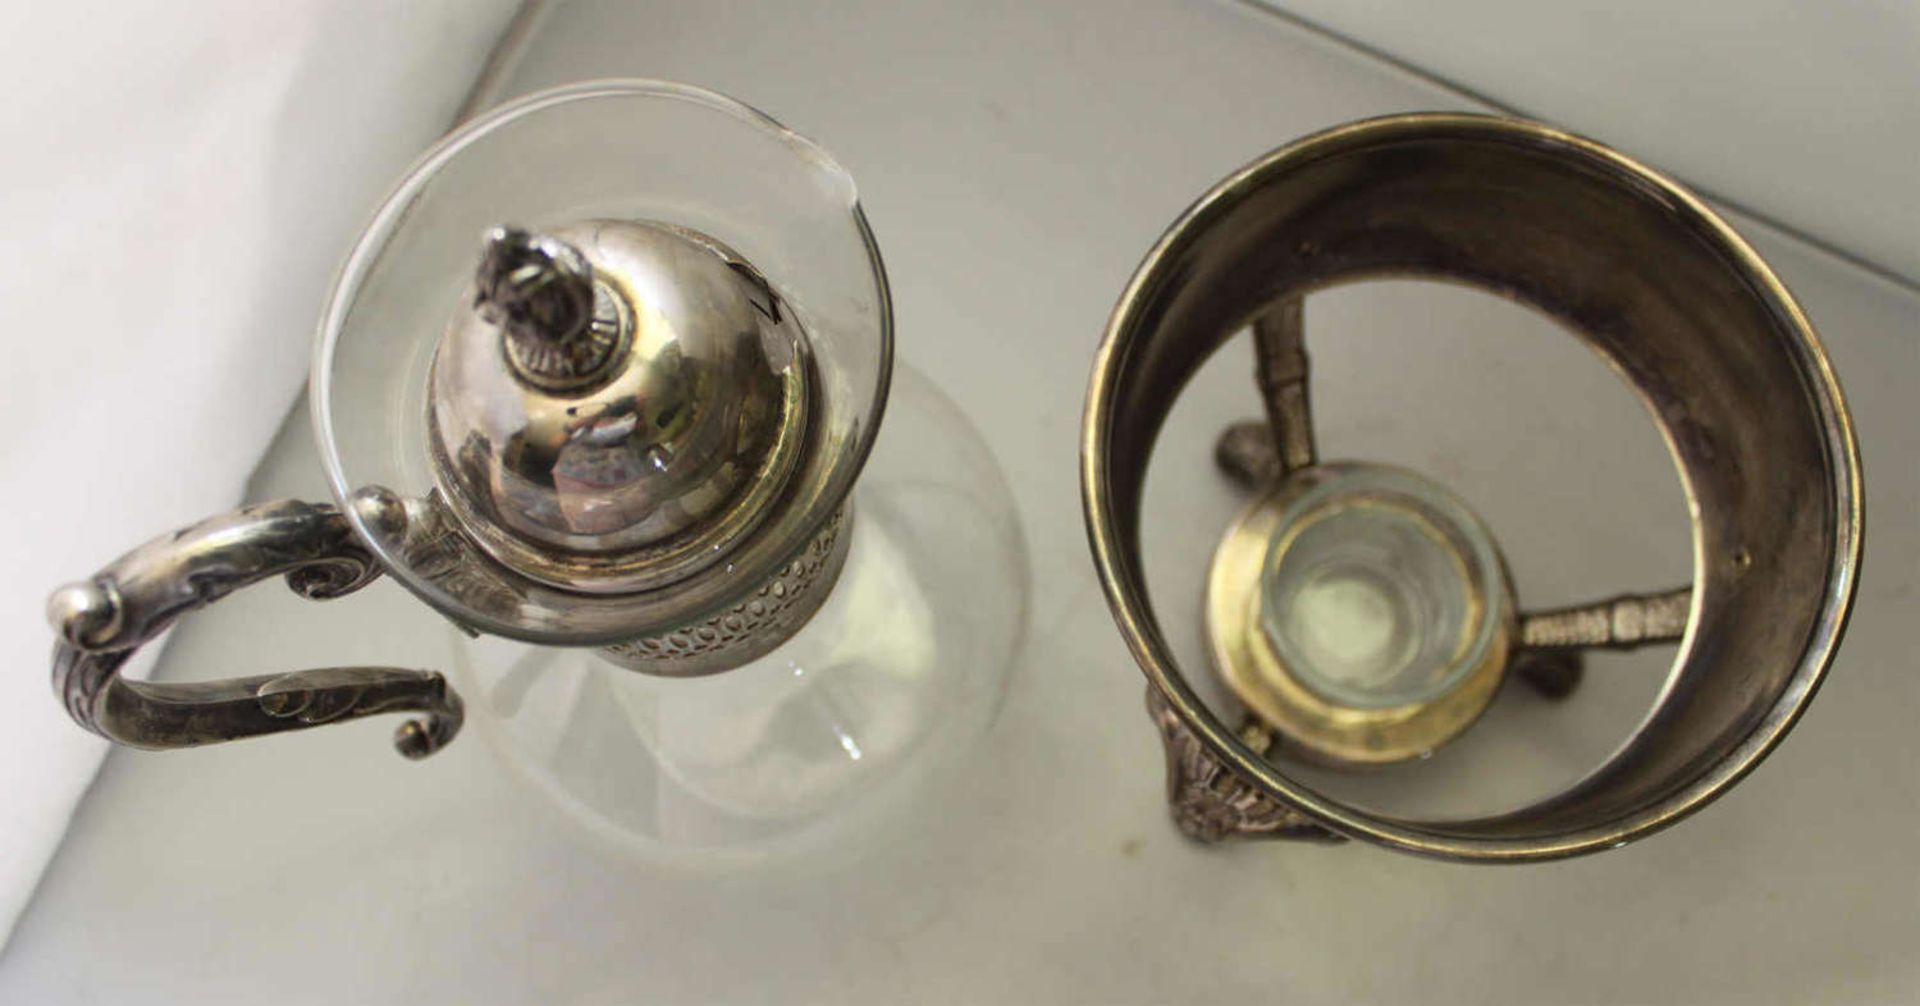 Jugendstil - ausgefallene Glaskanne mit Stövchen. Sehr feine Ausführung - Selten!Art Nouveau - fancy - Image 2 of 2